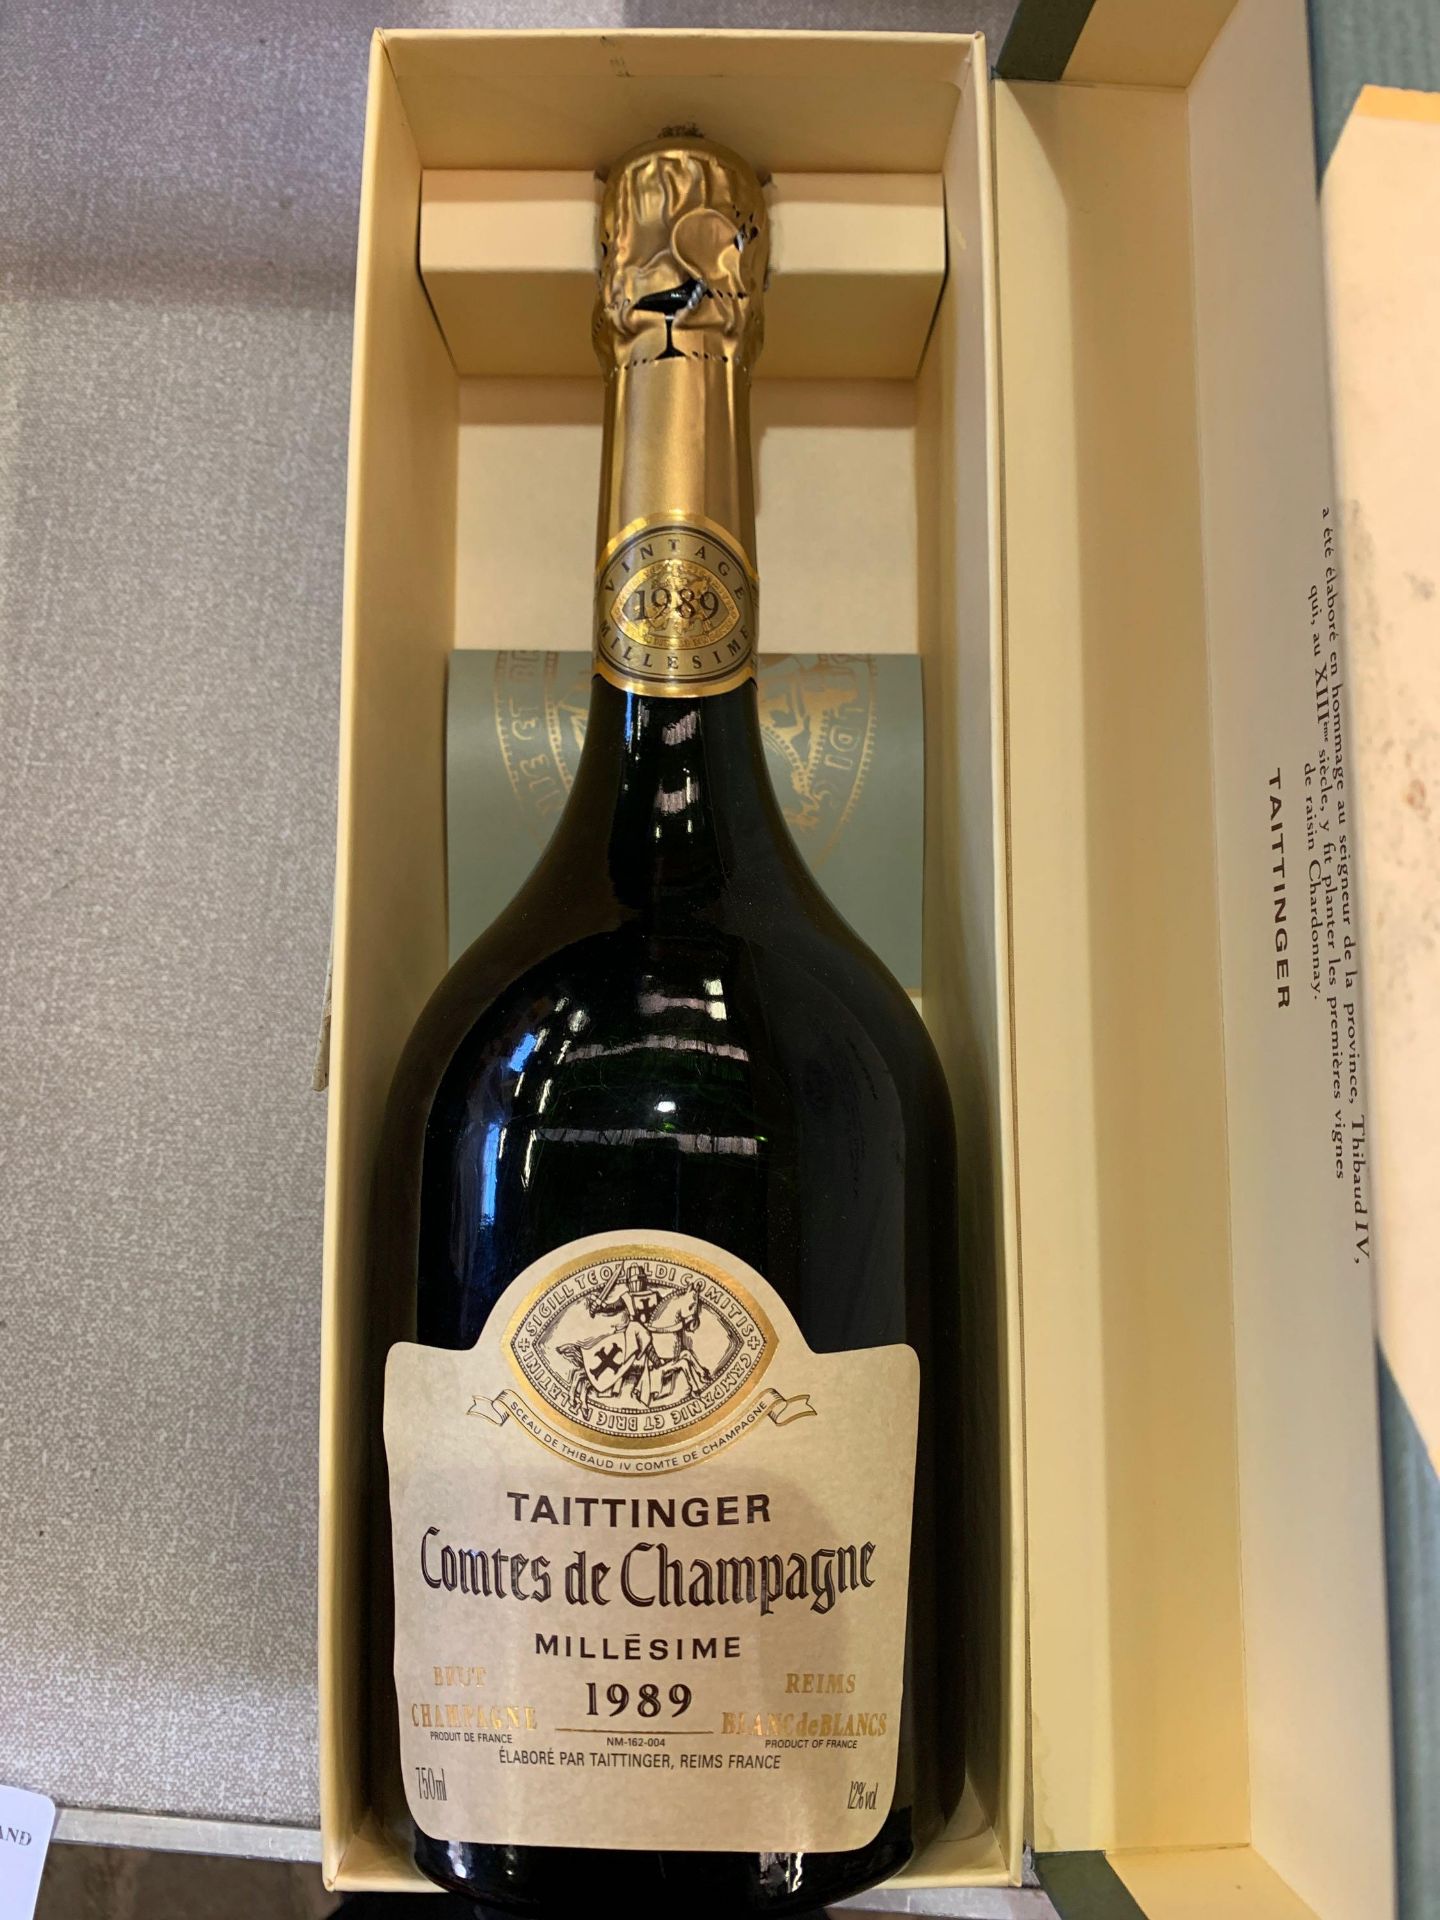 Taittinger vintage champagne, 1989